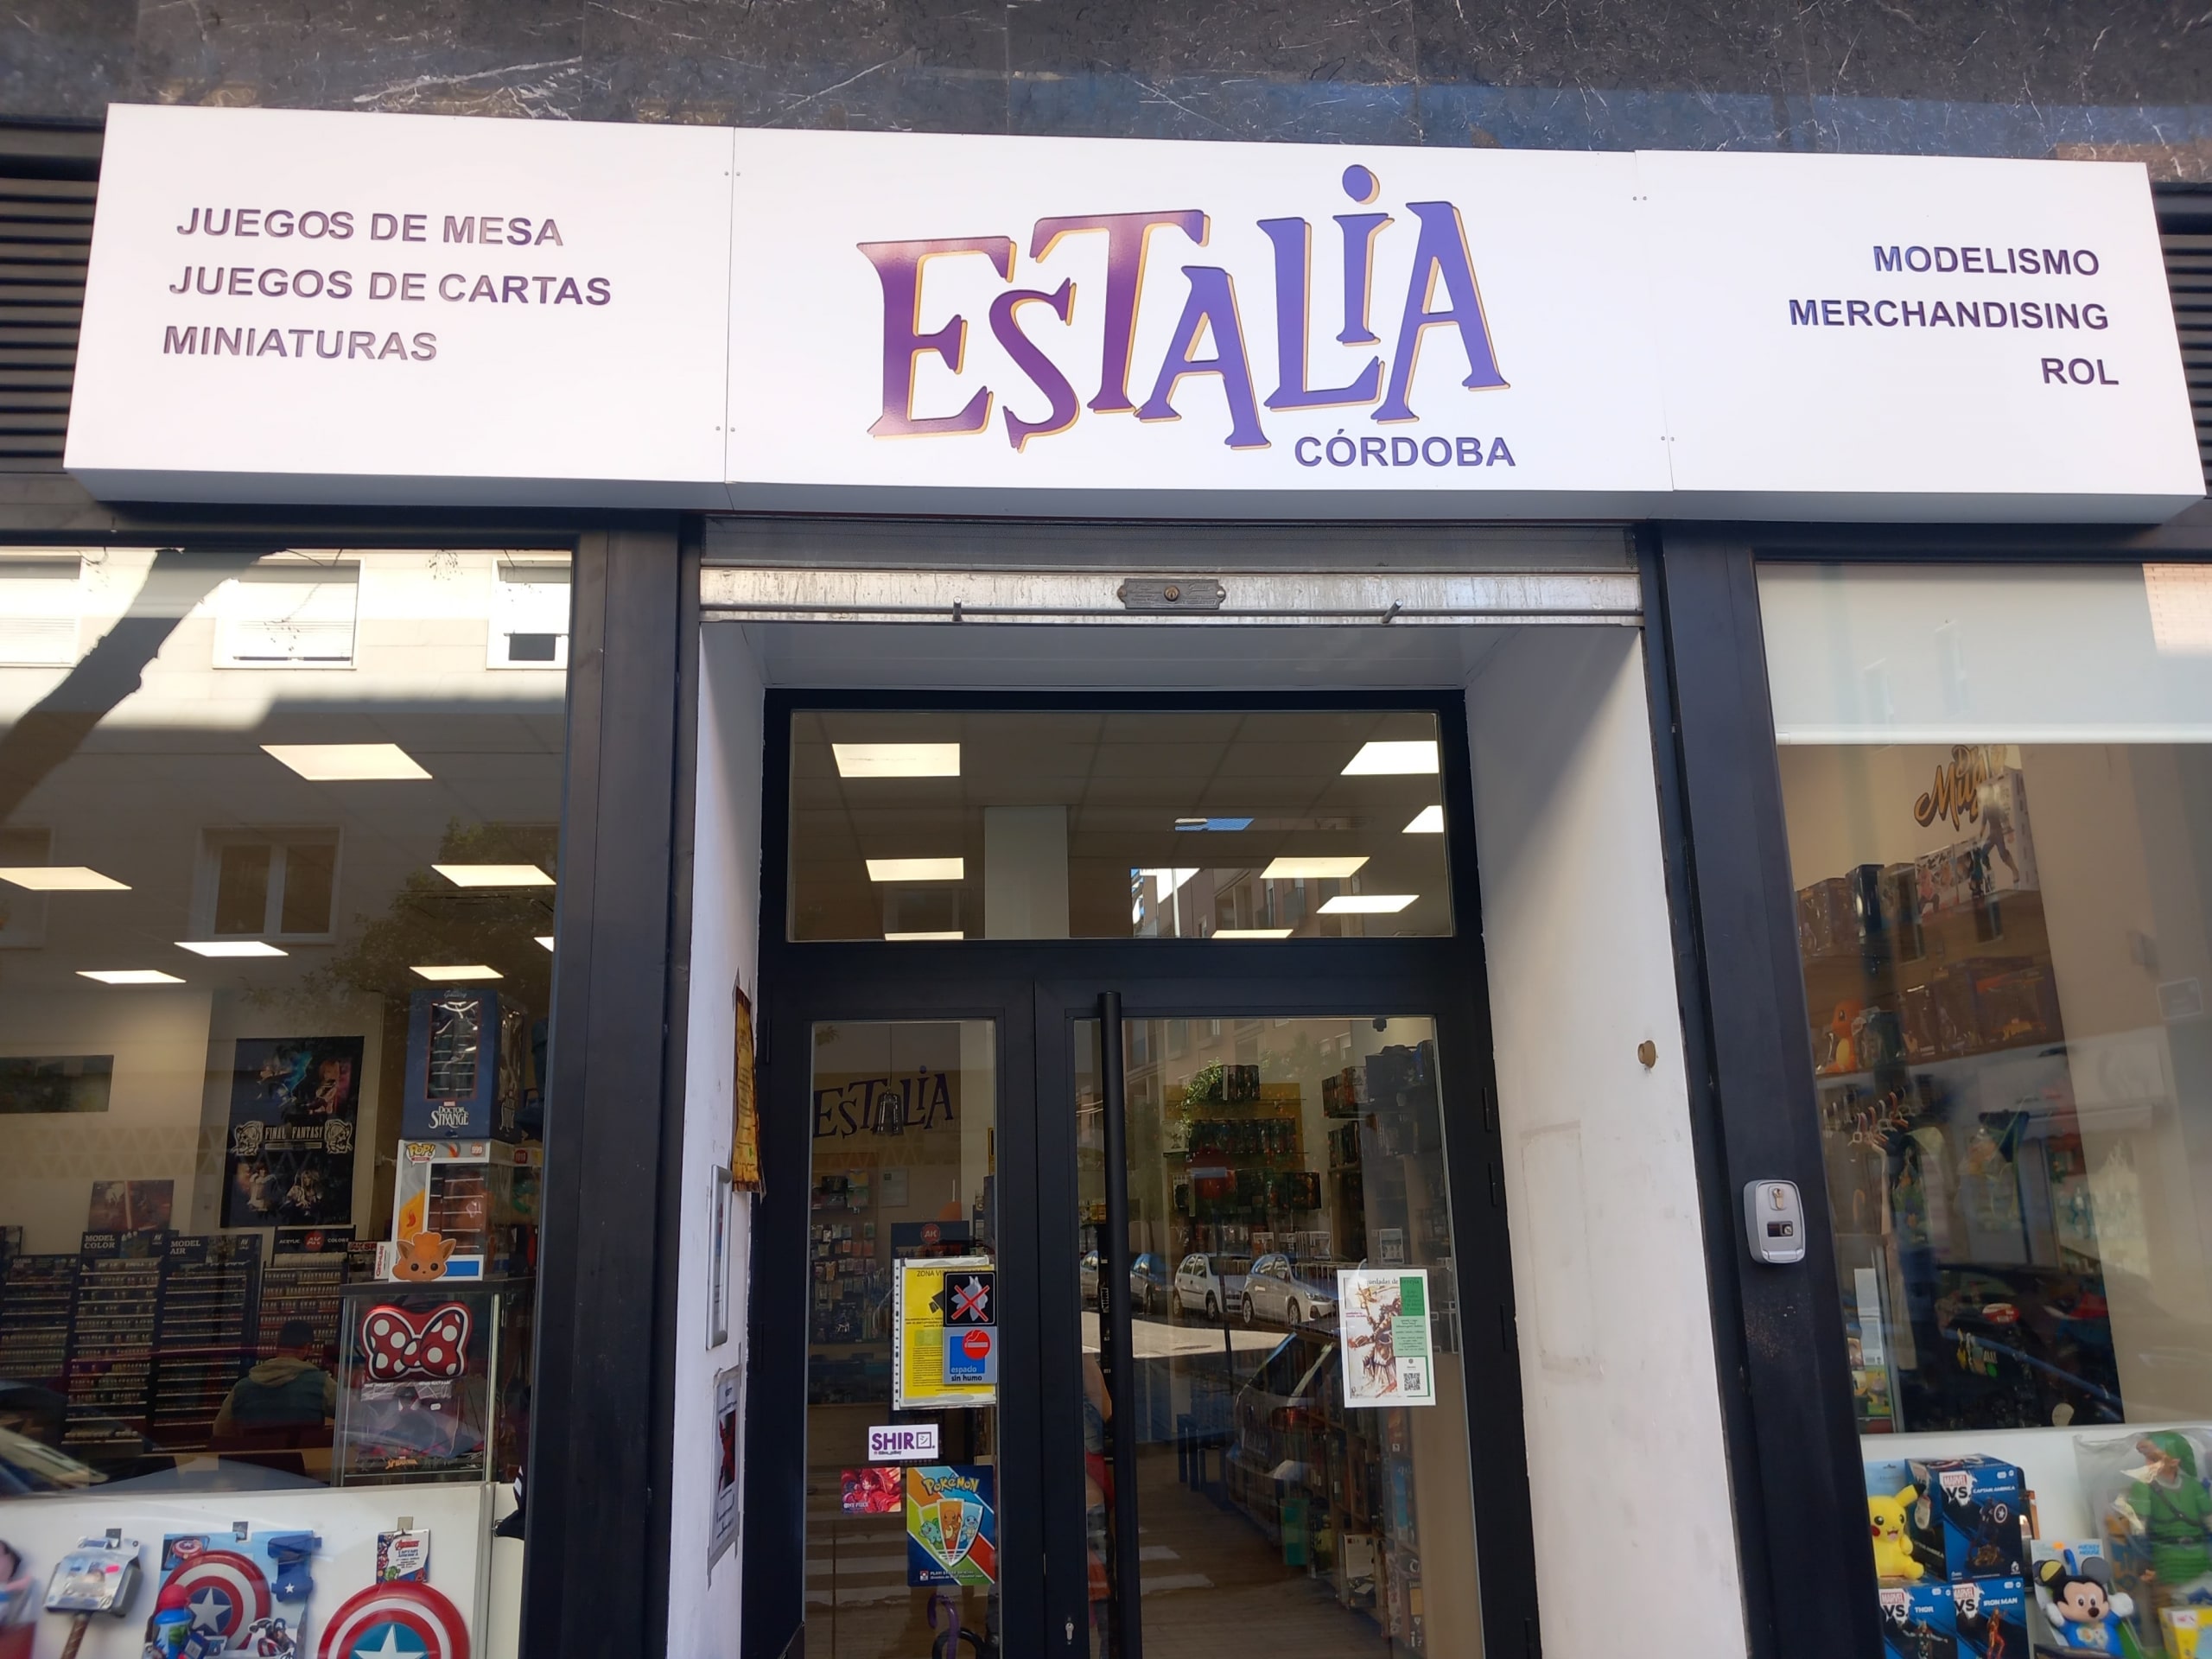 Estalia Cordoba. Hobby winkel. Foto van de ingang van de winkel.